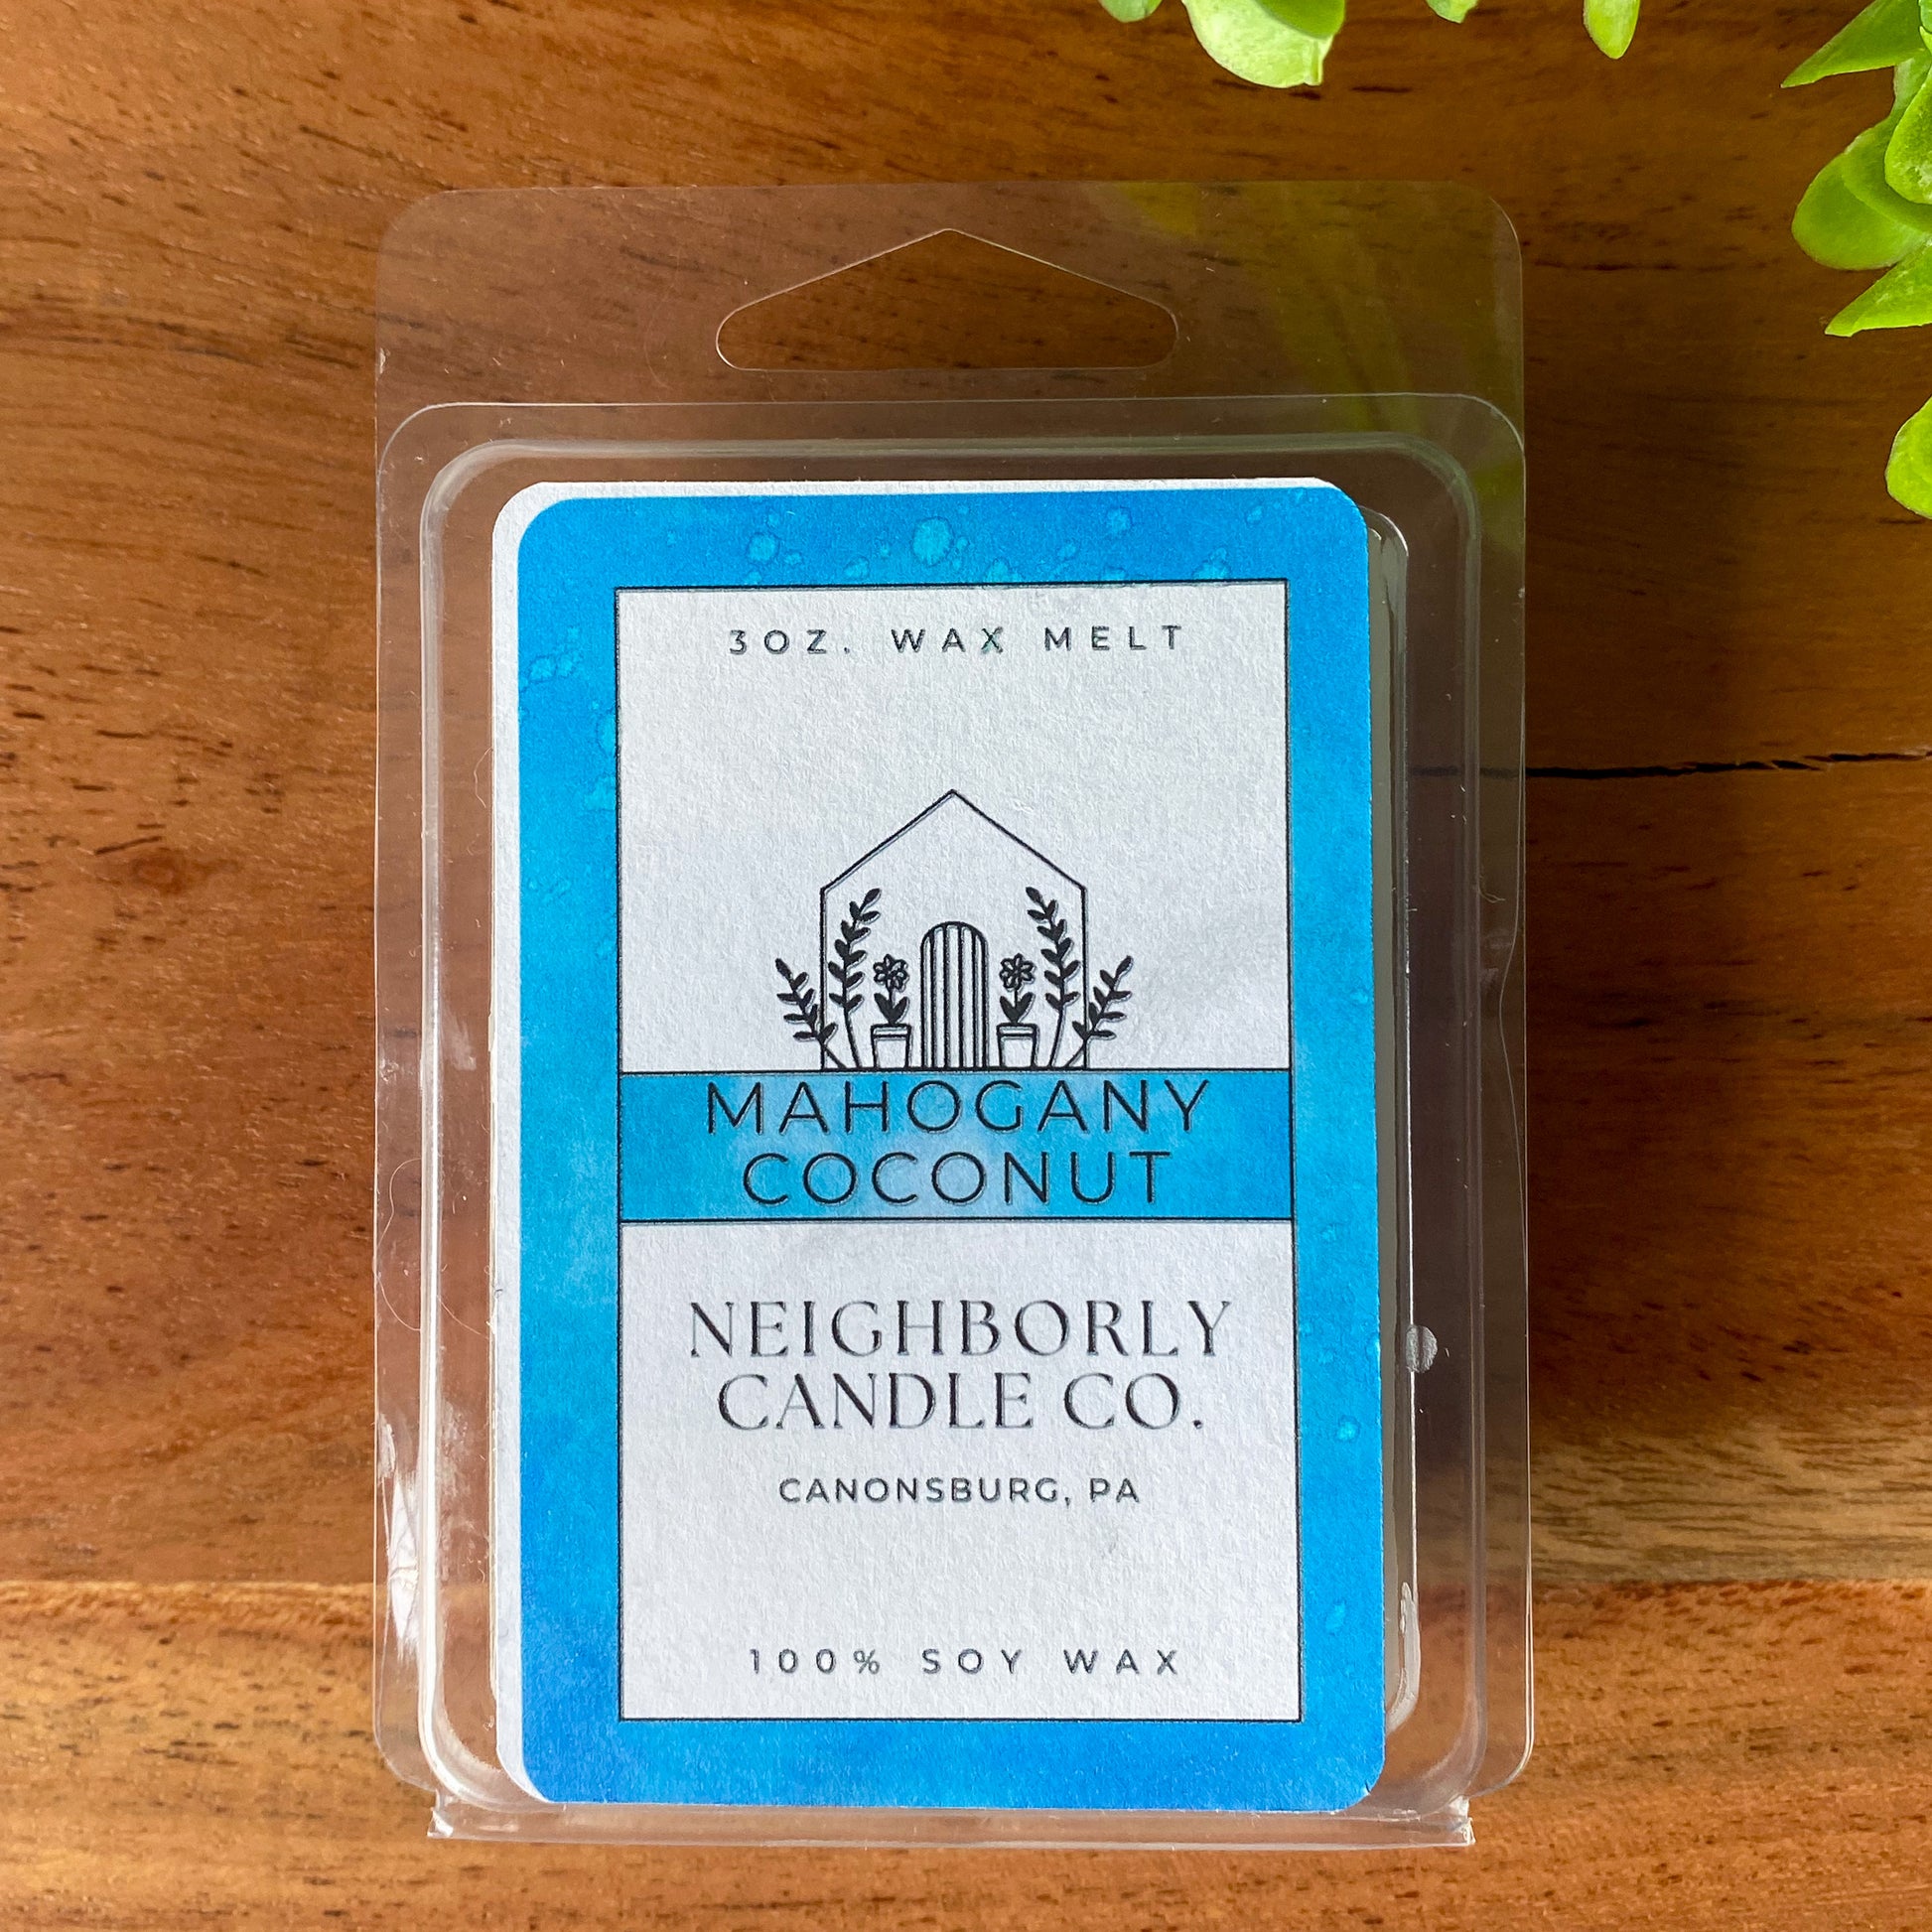 Mahogany Coconut Wax Melt – Neighborly Candle Co.